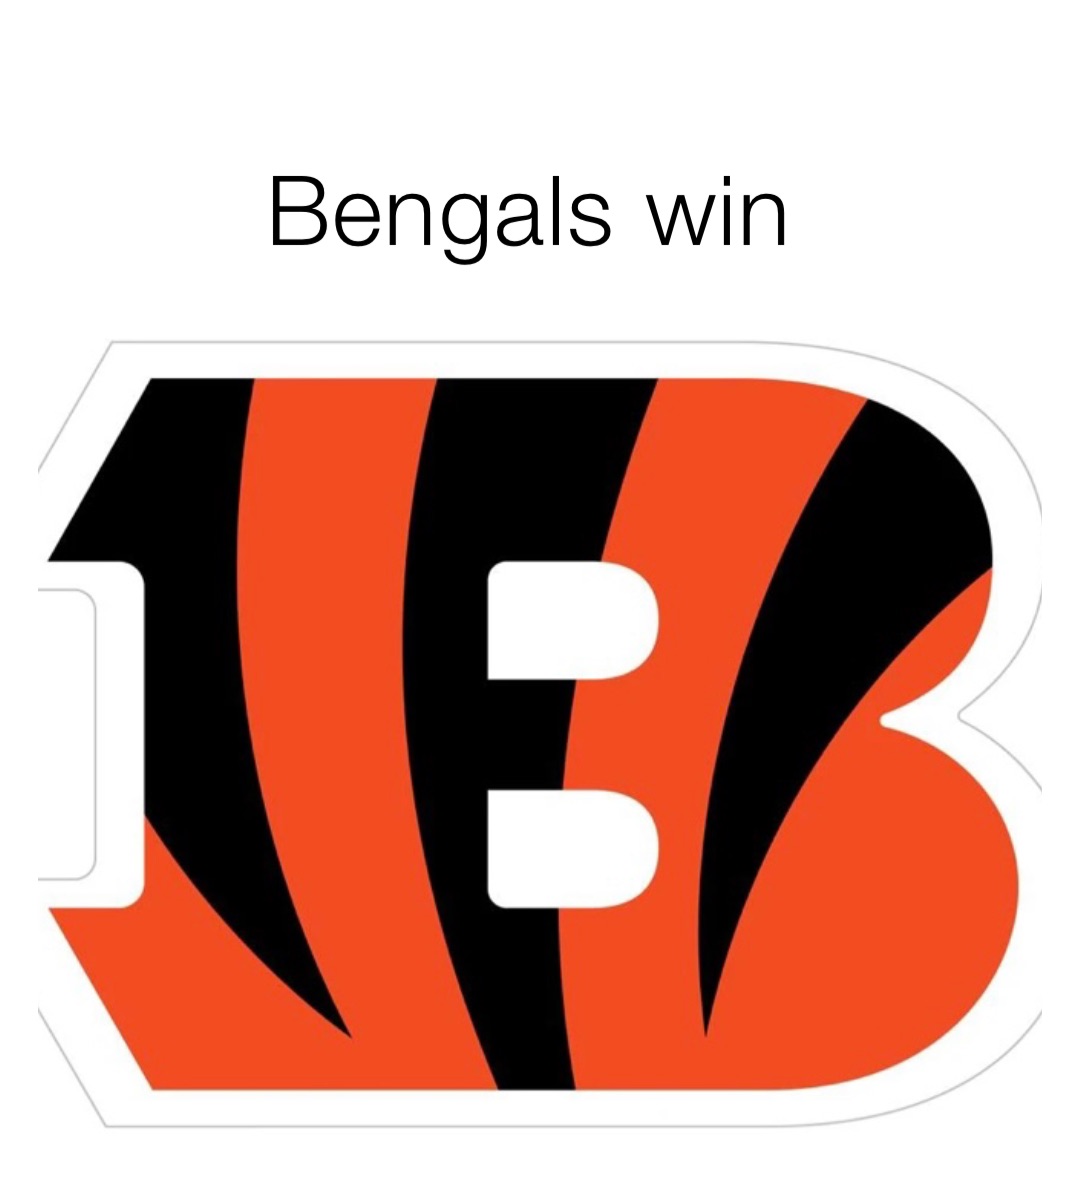 Bengals win